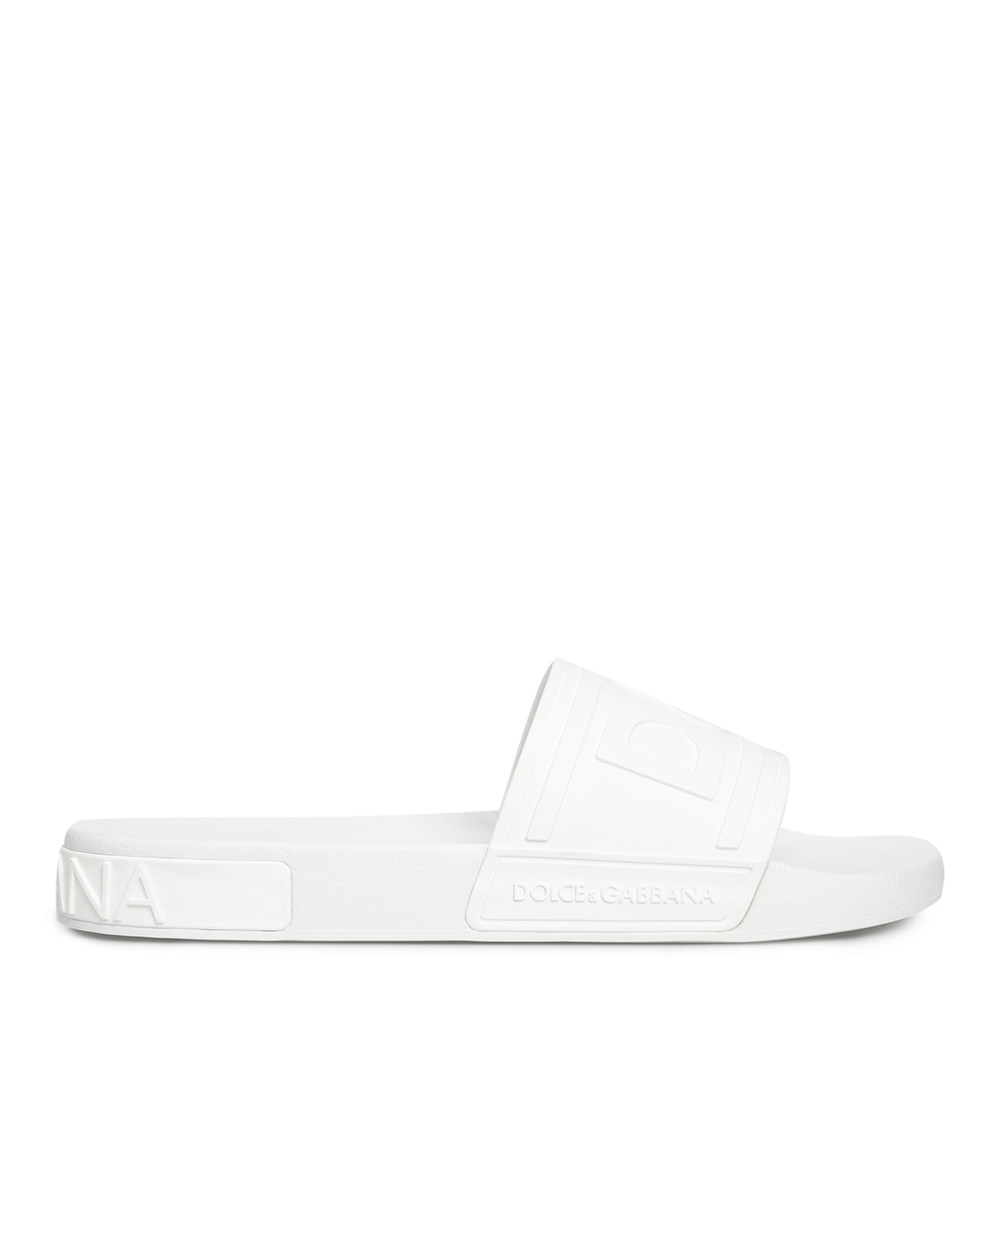 Слайдеры Dolce&Gabbana CS1786-AX389, белый цвет • Купить в интернет-магазине Kameron